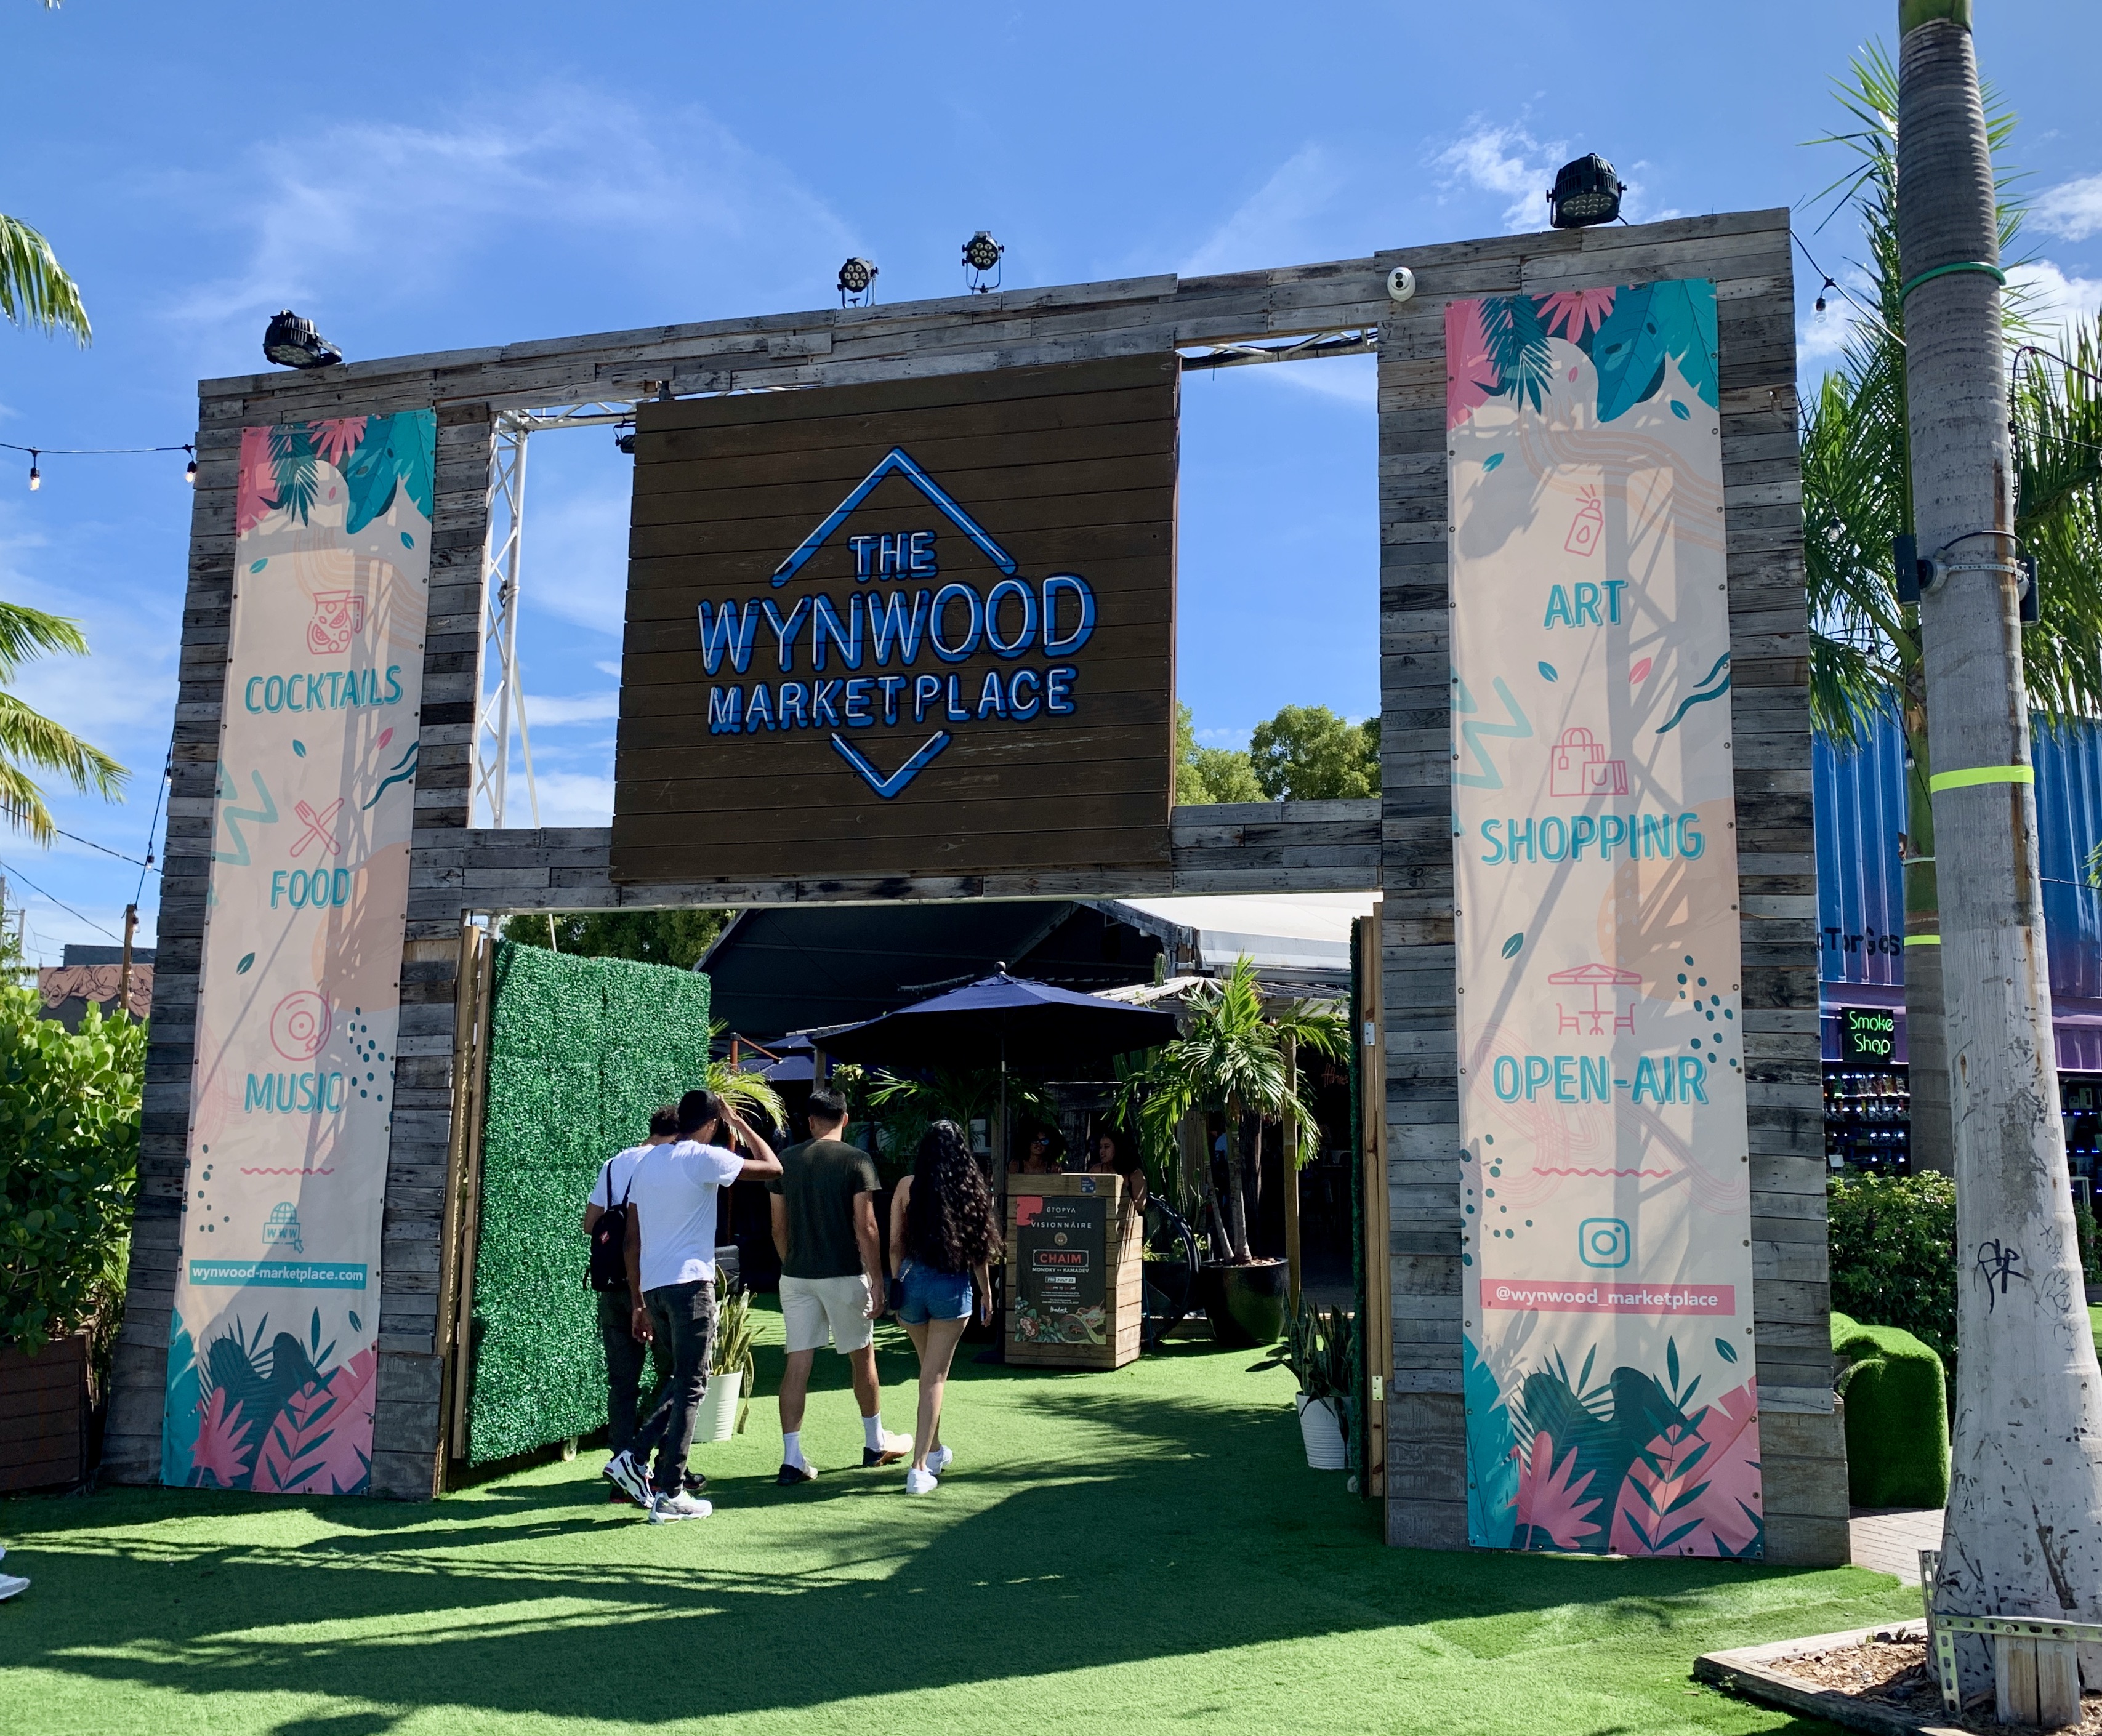 The Wynwood Marketplace